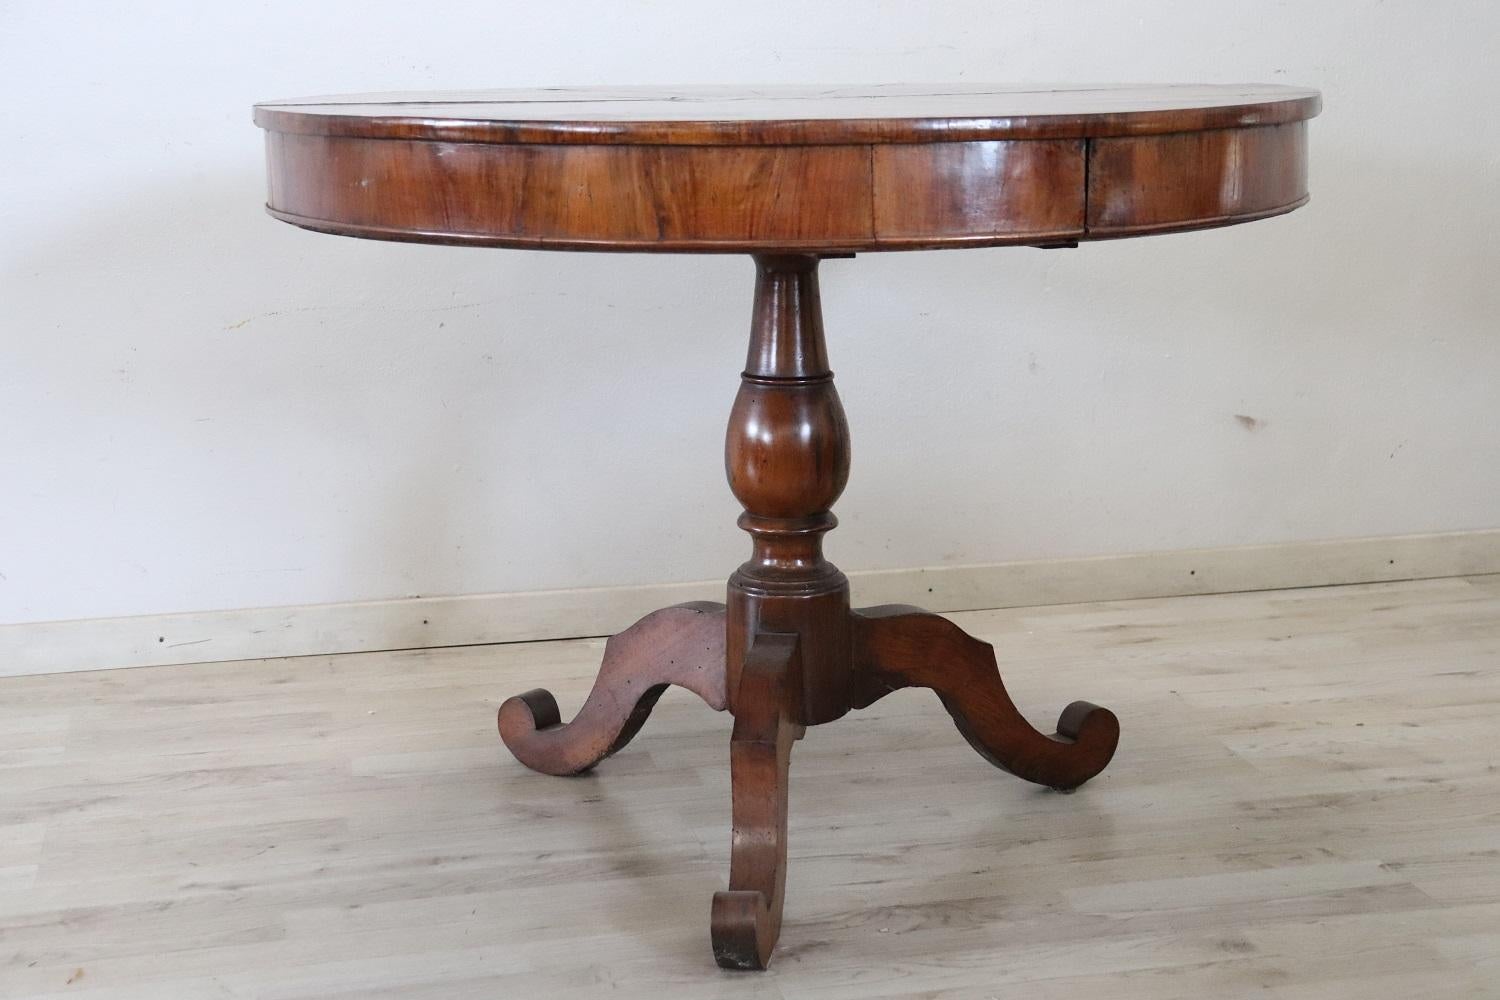 Table centrale ronde italienne raffinée en bois de noyer. Table d'époque Louis Philippe du 19ème siècle. Il est doté d'un élégant pied central tourné. La partie supérieure est ornée d'un décor incrusté raffiné avec une étoile centrale. Équipé d'un